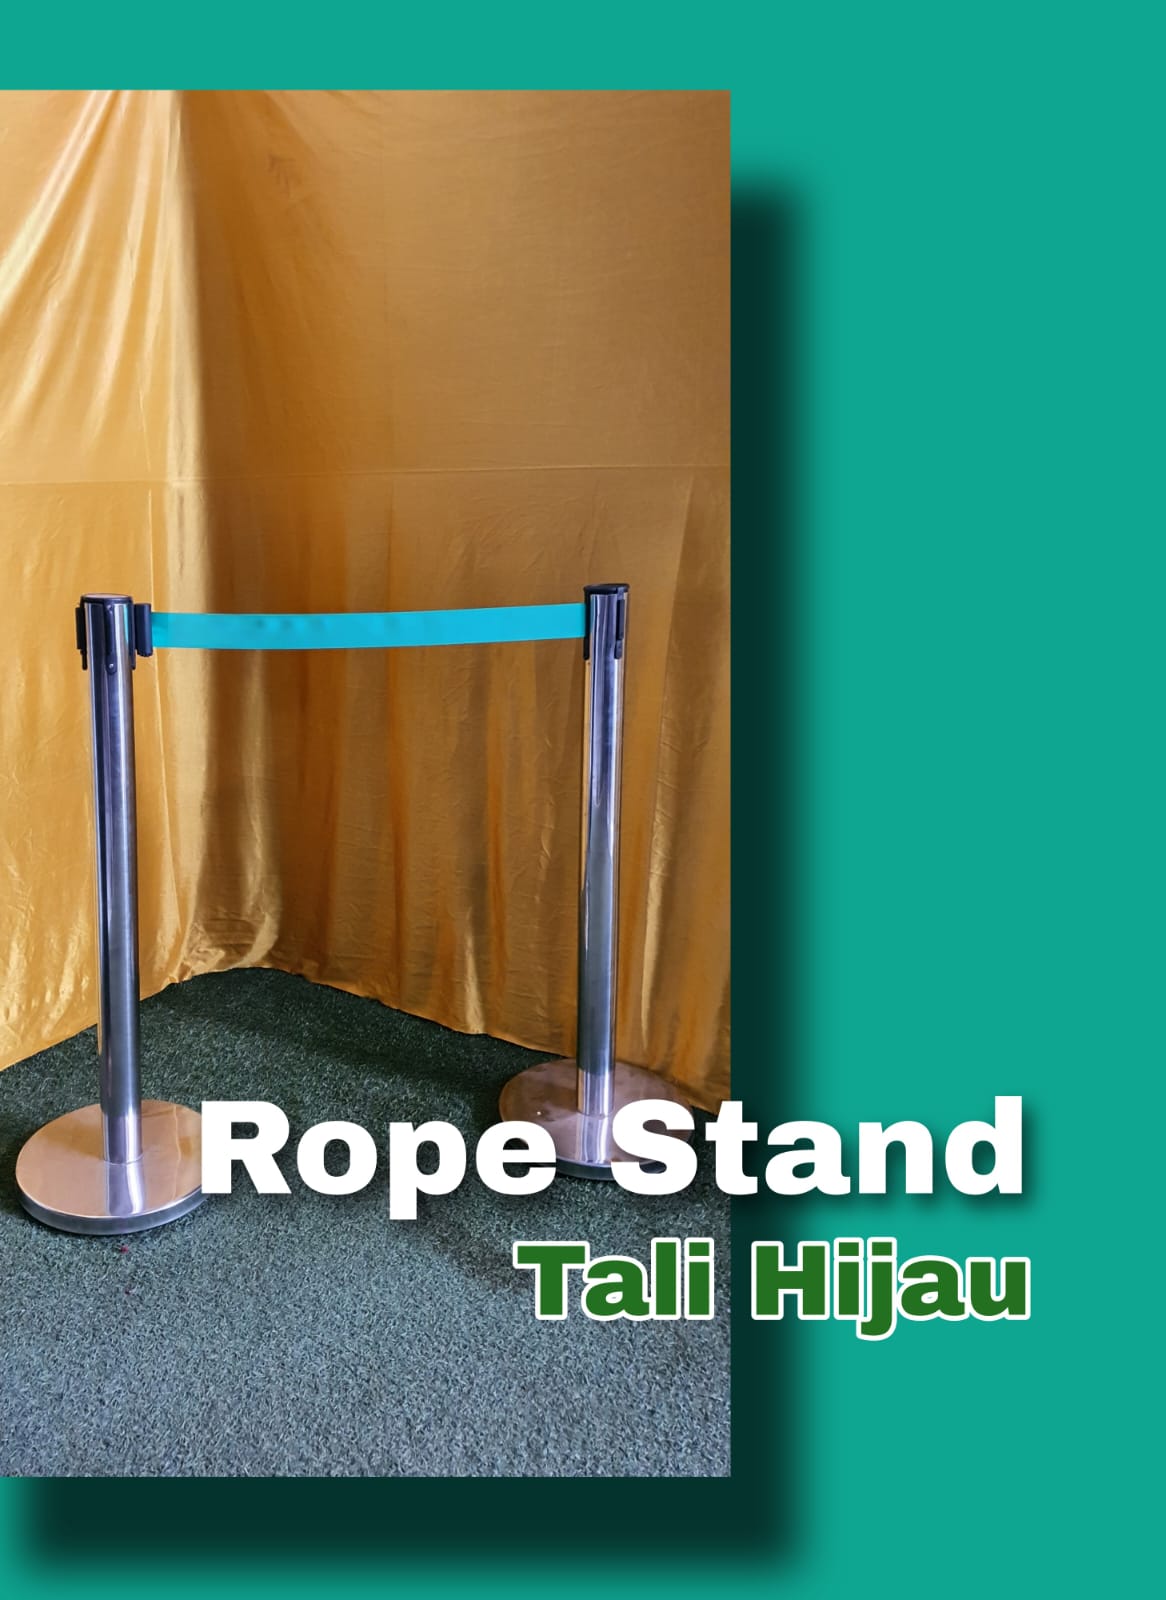 Sewa Rope Stand Daerah Bogor Kualitas Vip